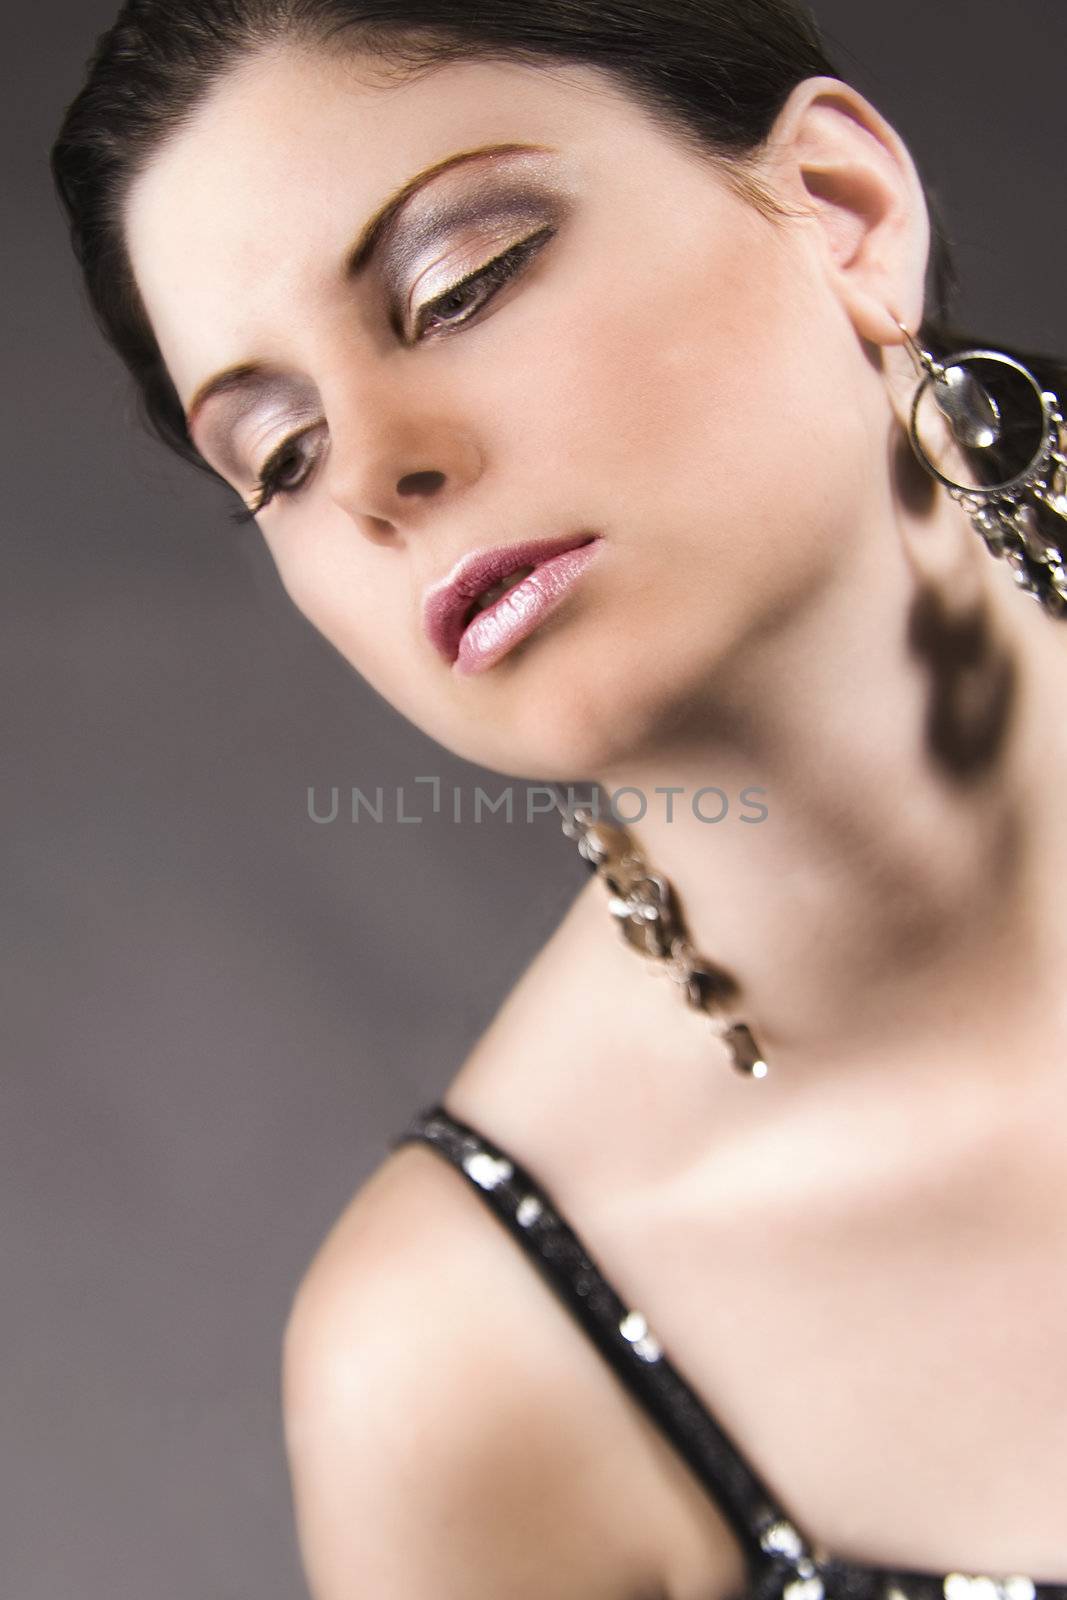 Portrait of a beautiful model showing her earrings